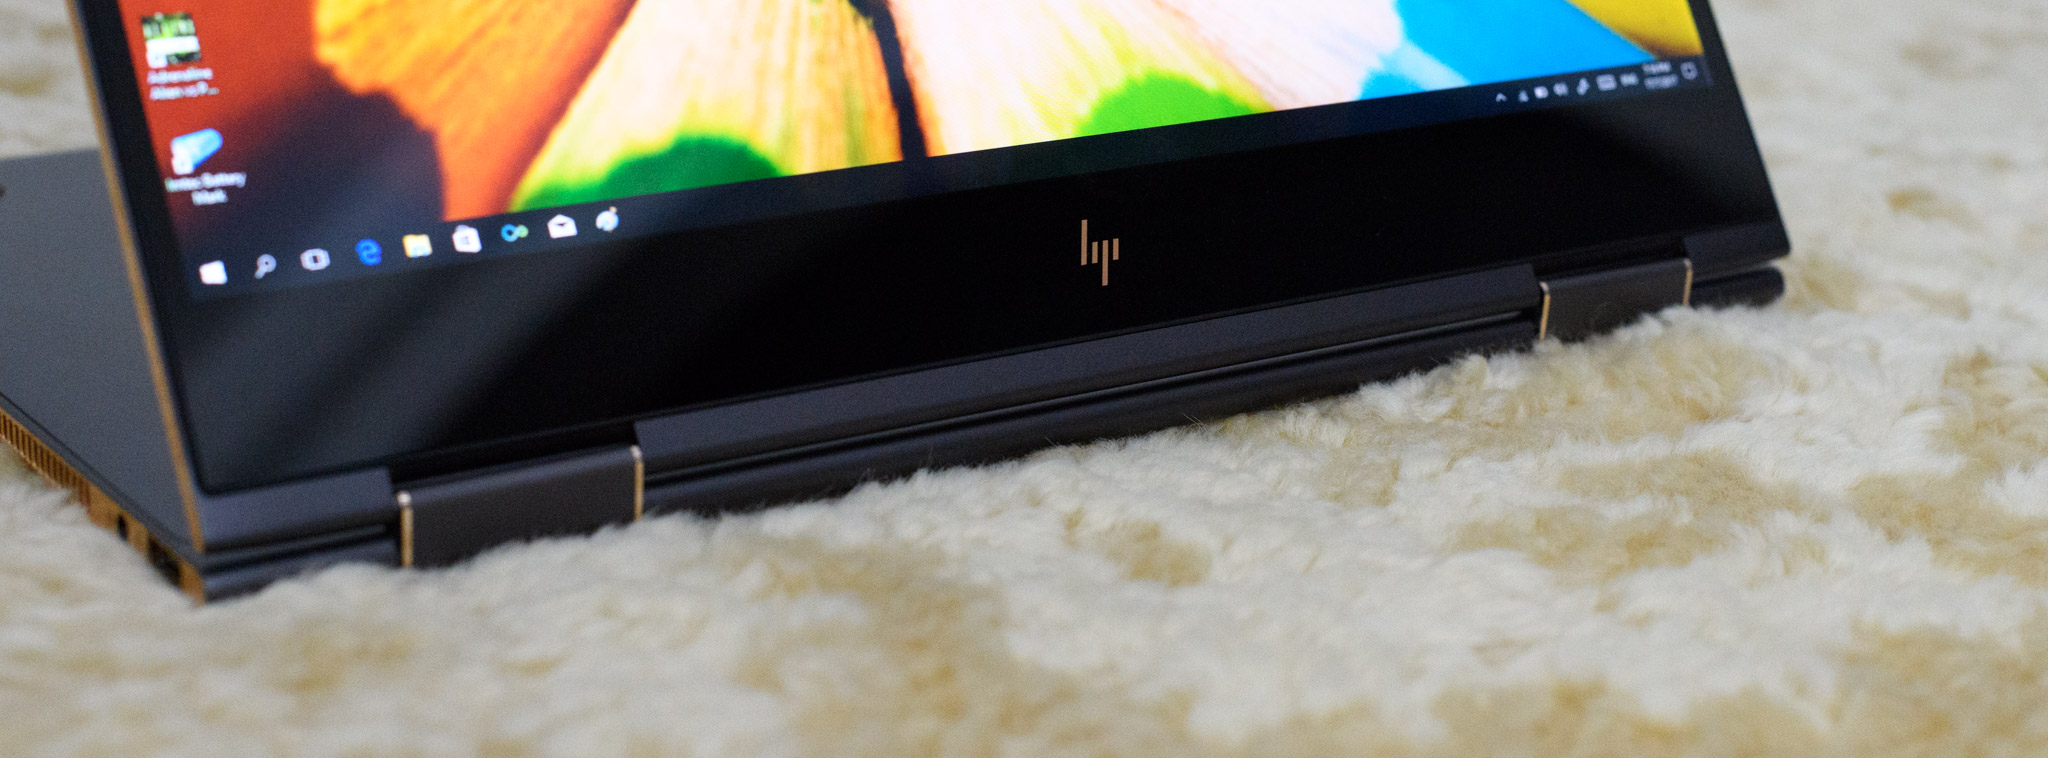 Đánh giá HP Spectre x360 – Mỏng nhẹ, dáng đẹp, màn hình xoay 360 độ